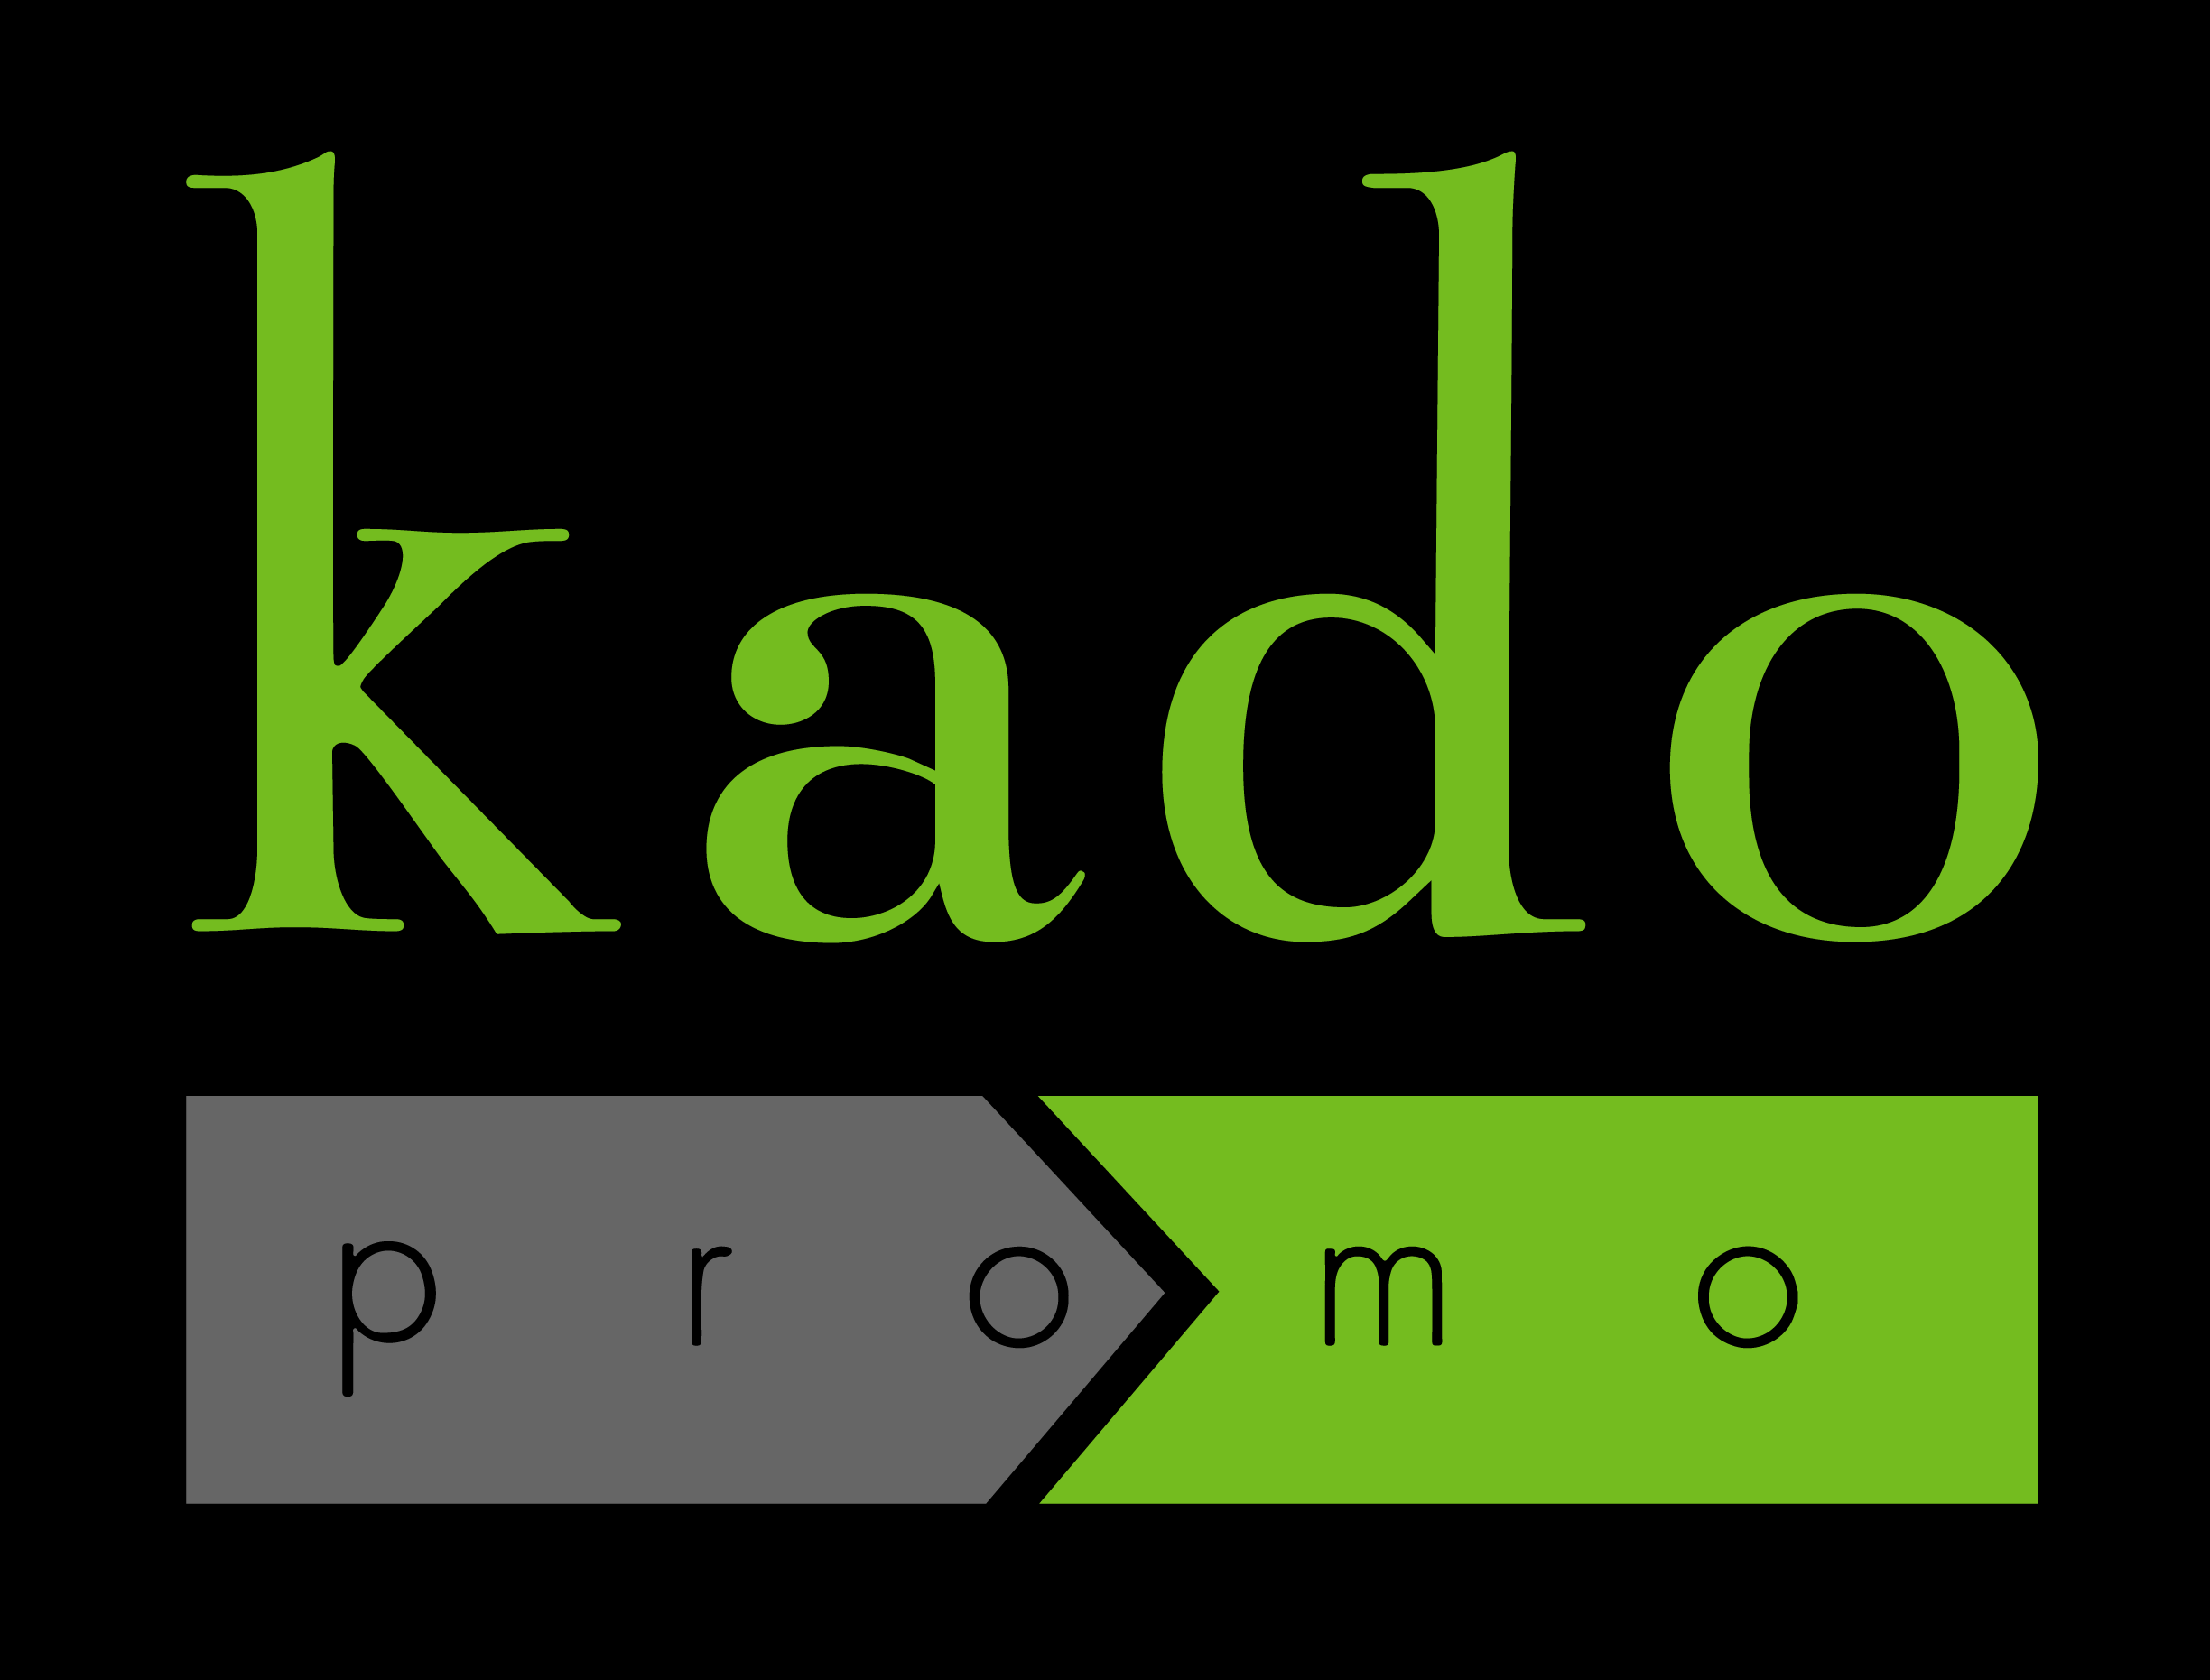 Kado Promo – Pour des objets et des vêtements promotionnels